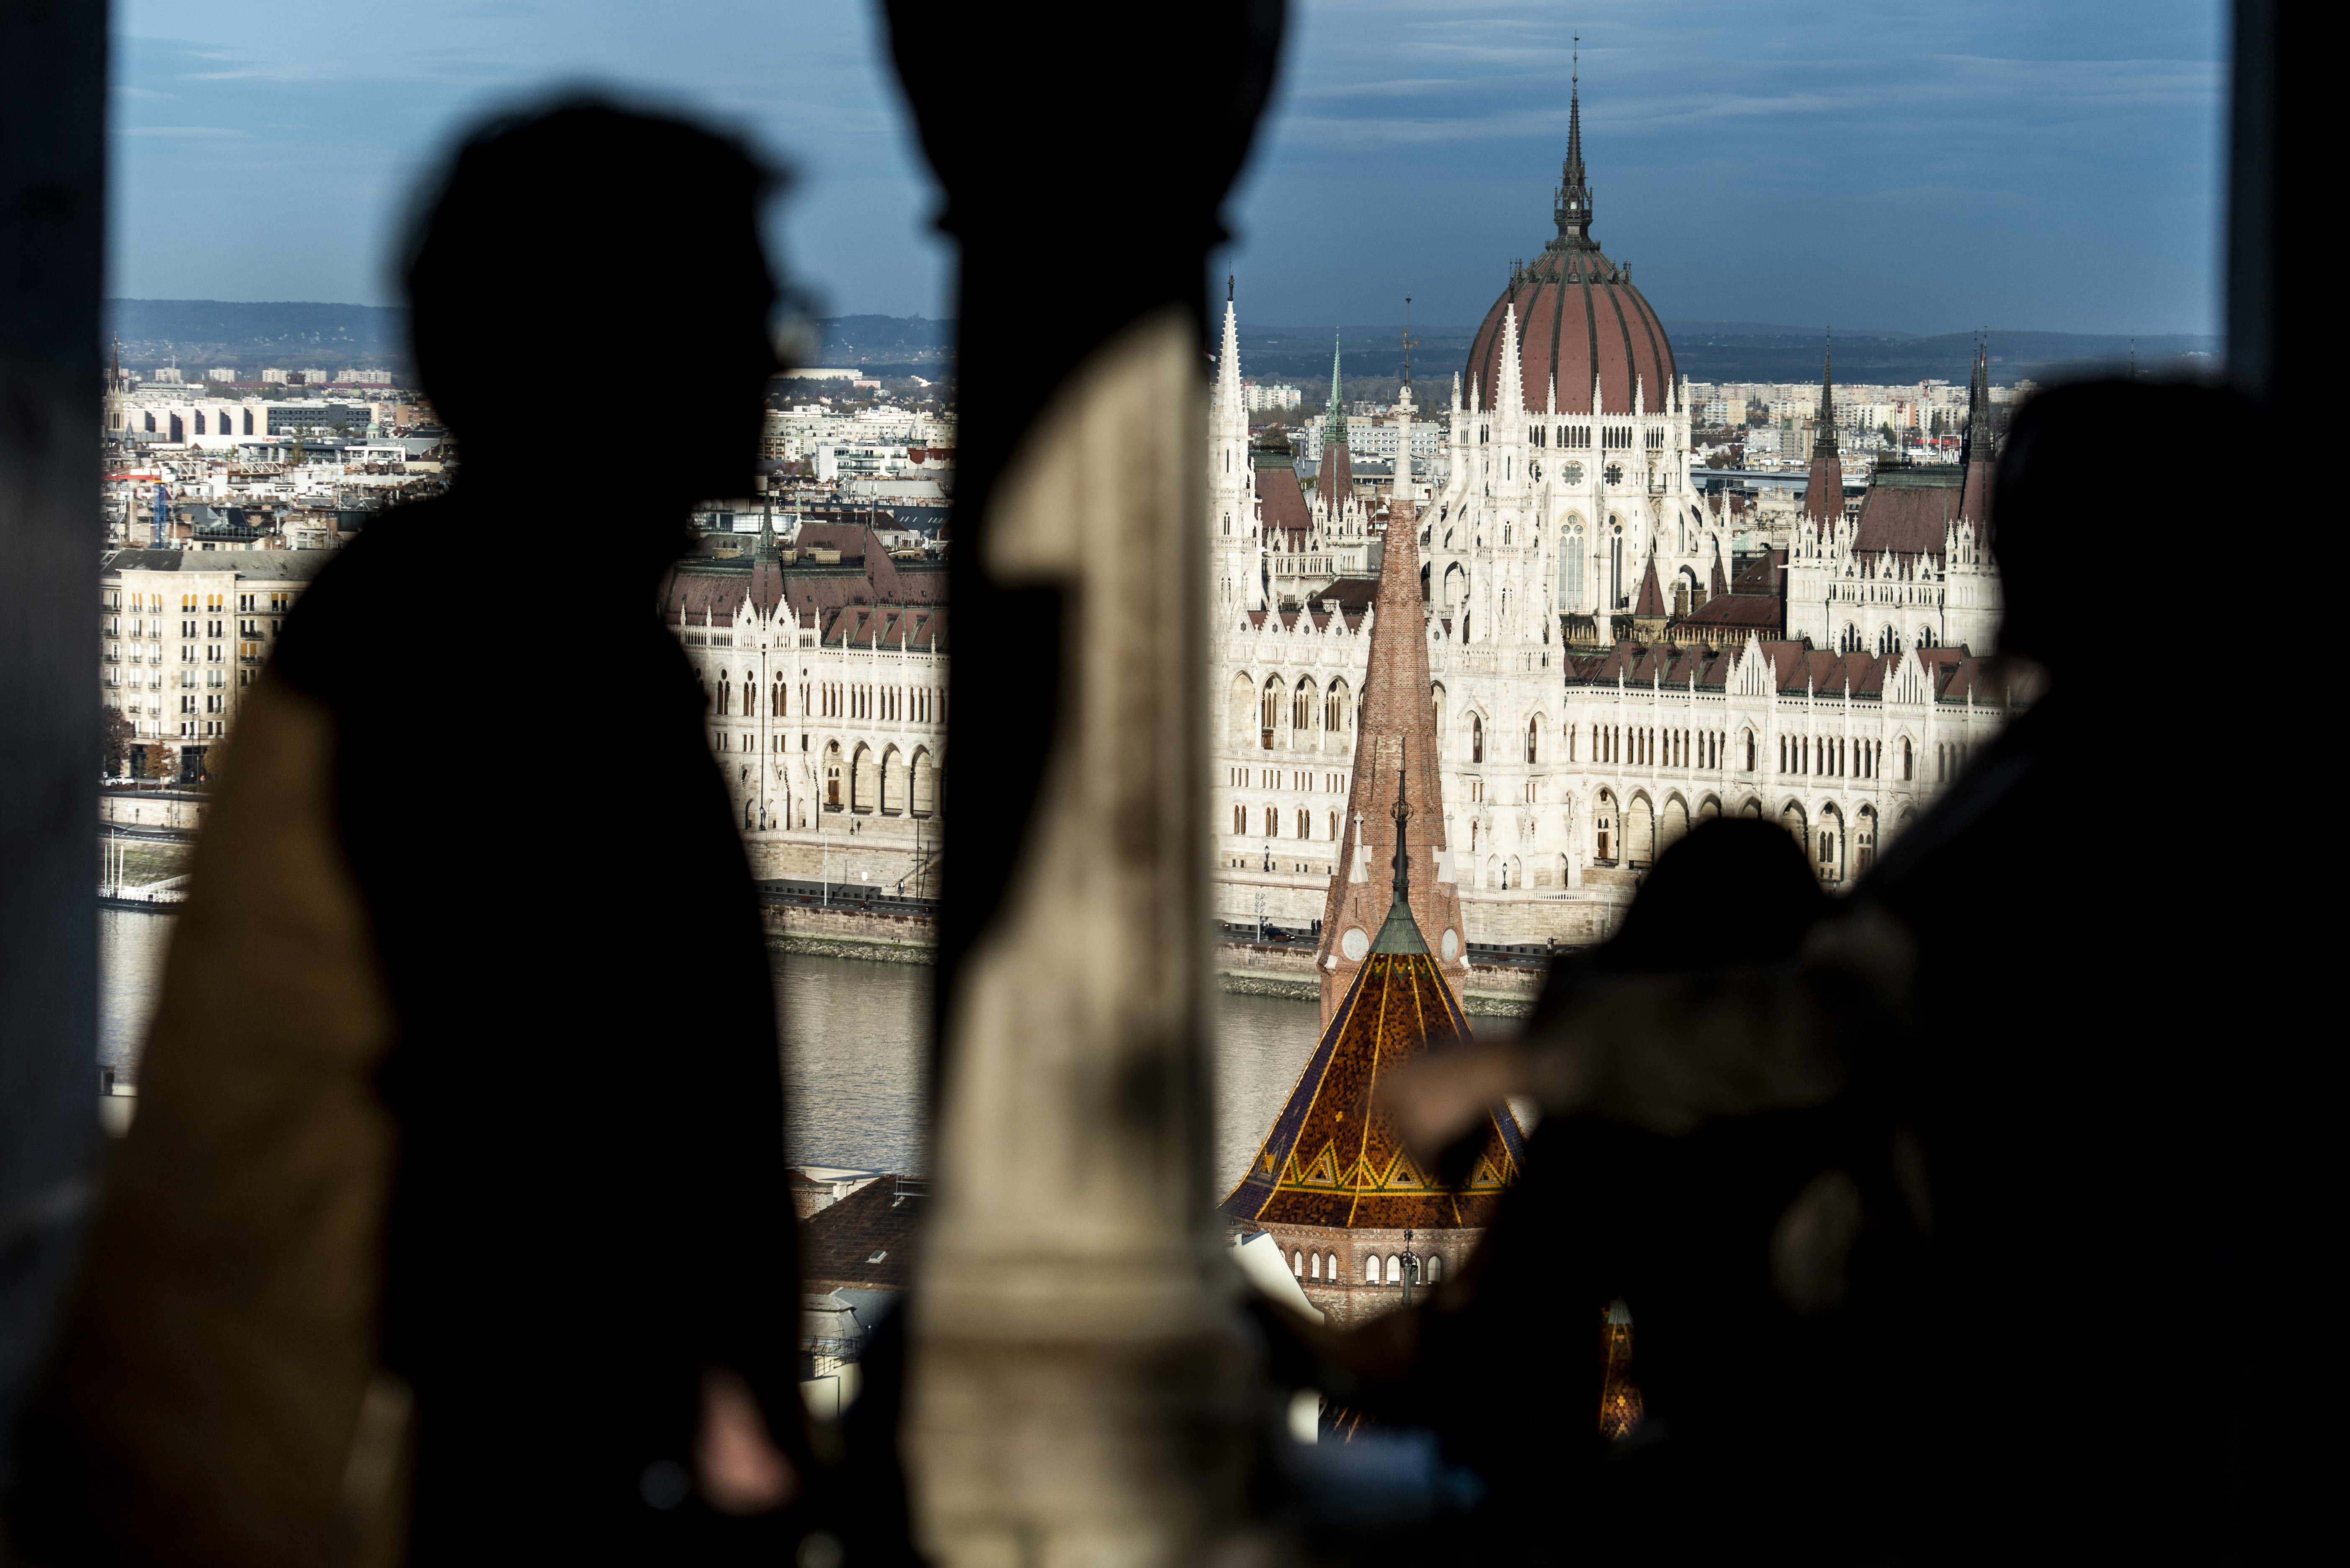 A 7. legjobb kulturális úti cél Budapest a Tripadvisor szerint